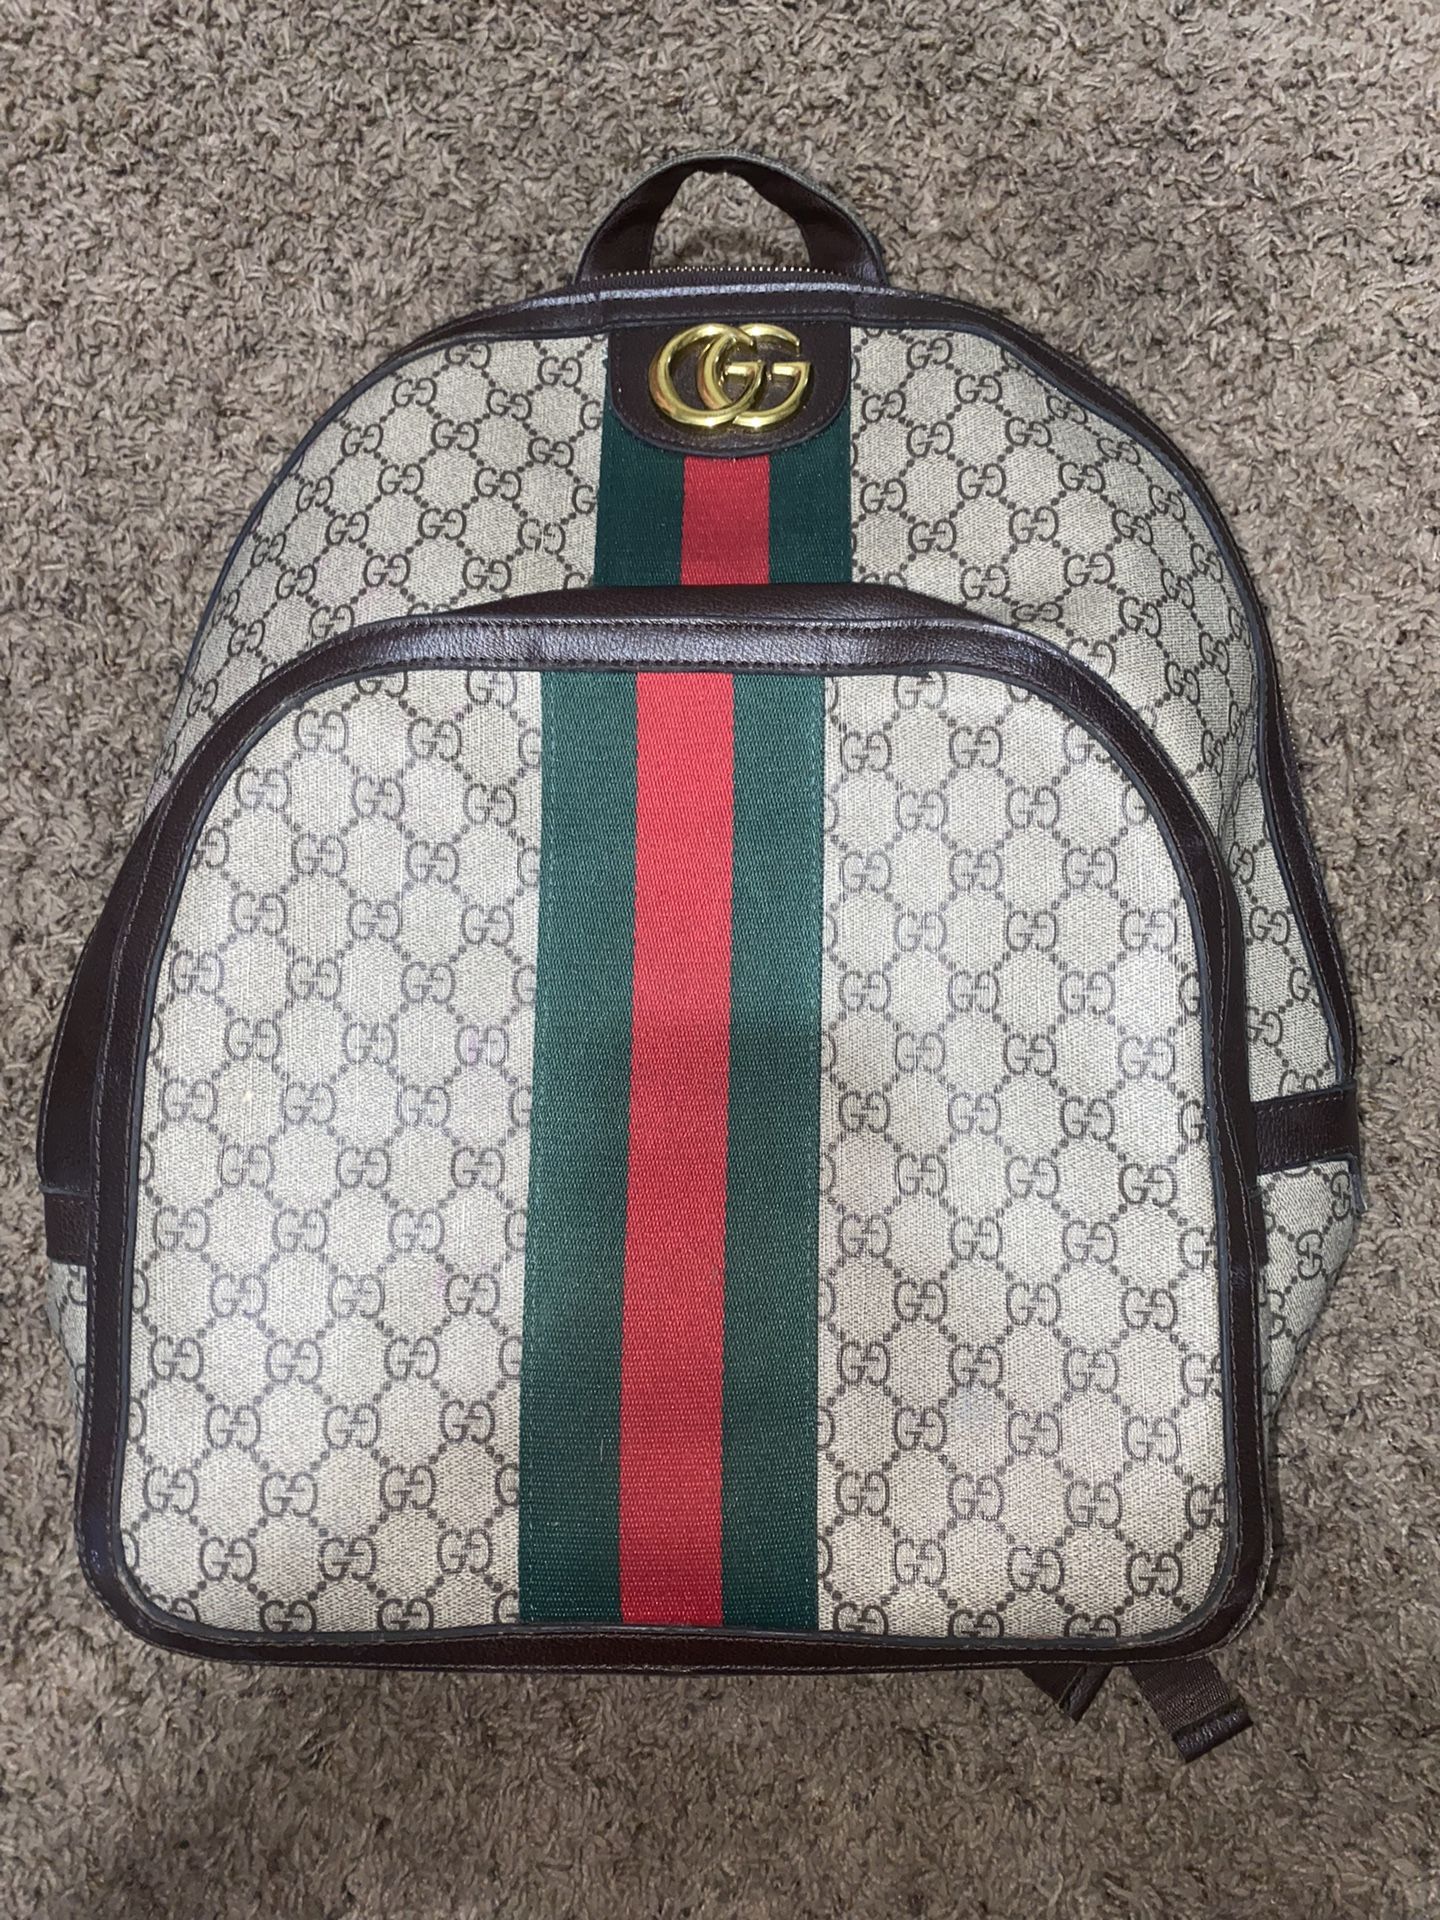 Gucci Book Bag